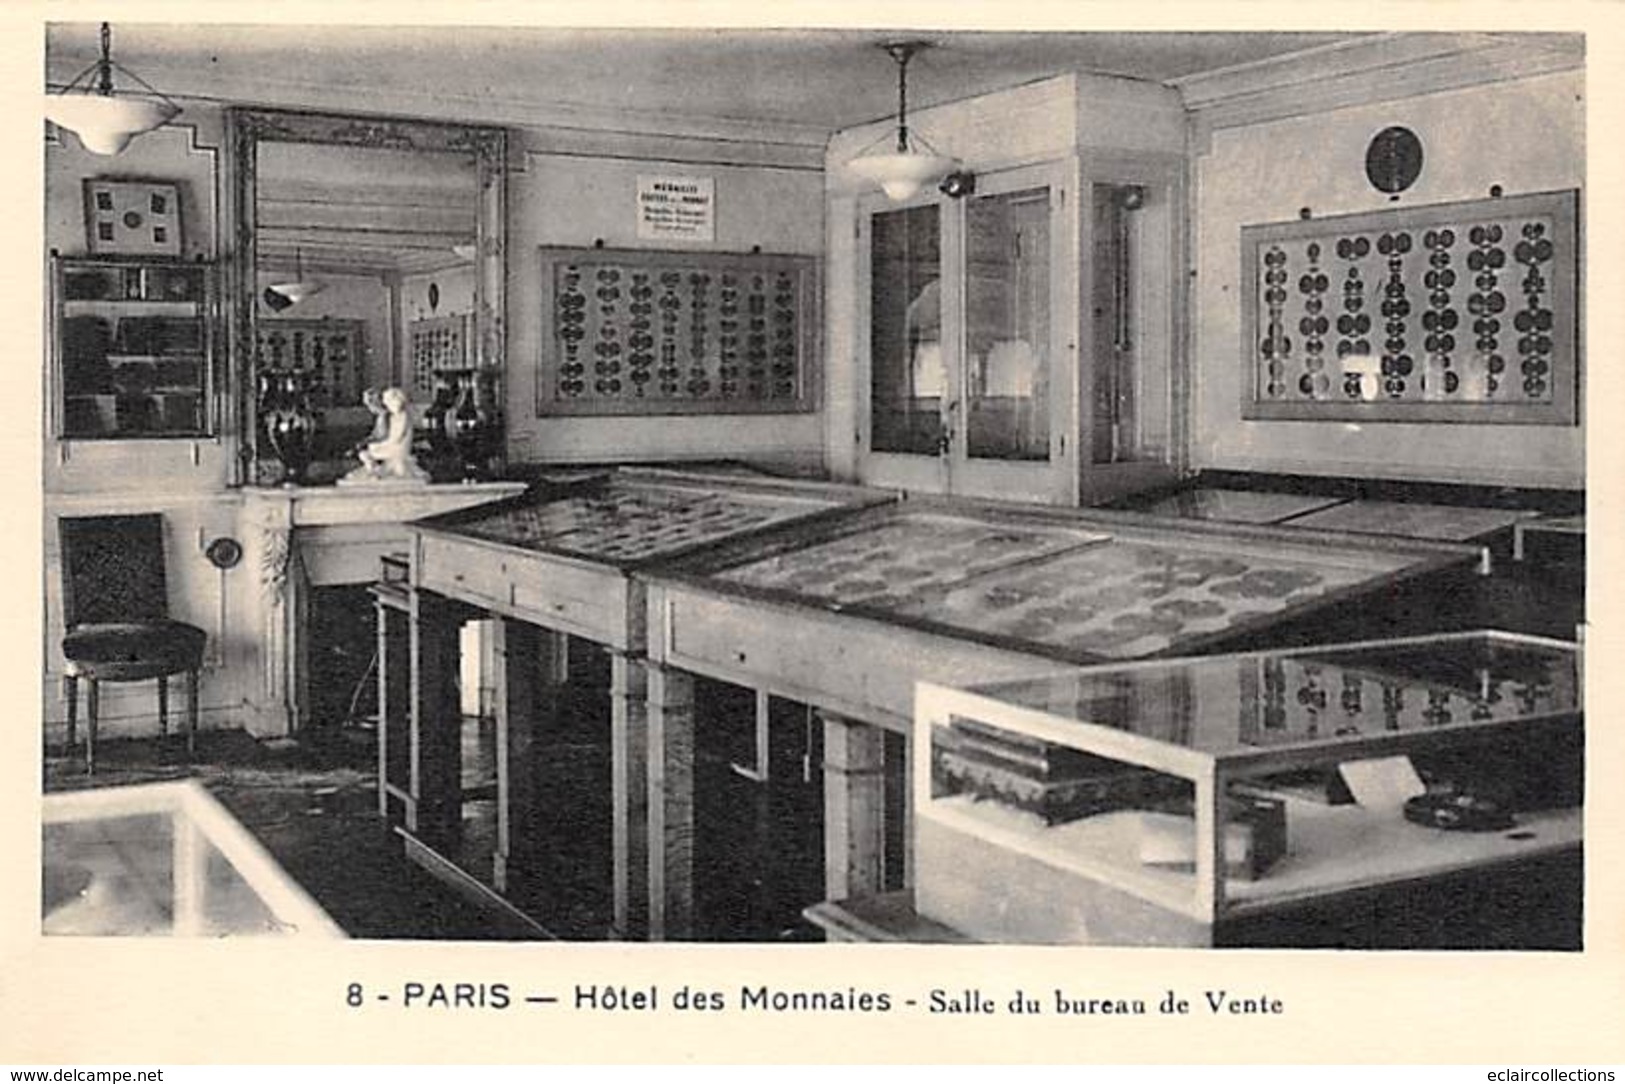 Paris     75  Hotel de la monnaie Fabrication. Série complète 24 CP Dos vierge  (voir scan)